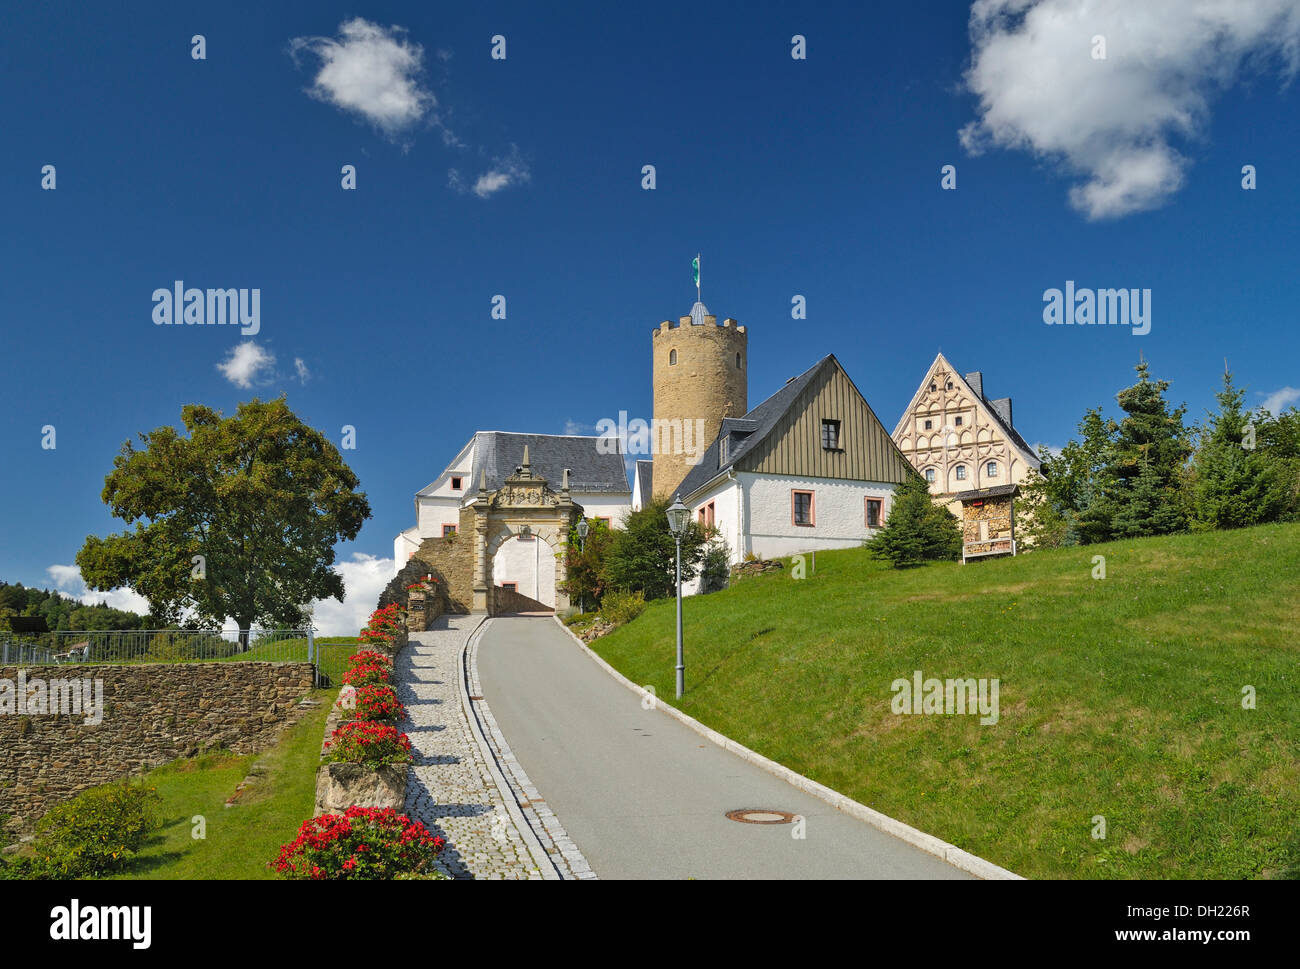 Burg Scharfenstein castle, Saxony Stock Photo - Alamy